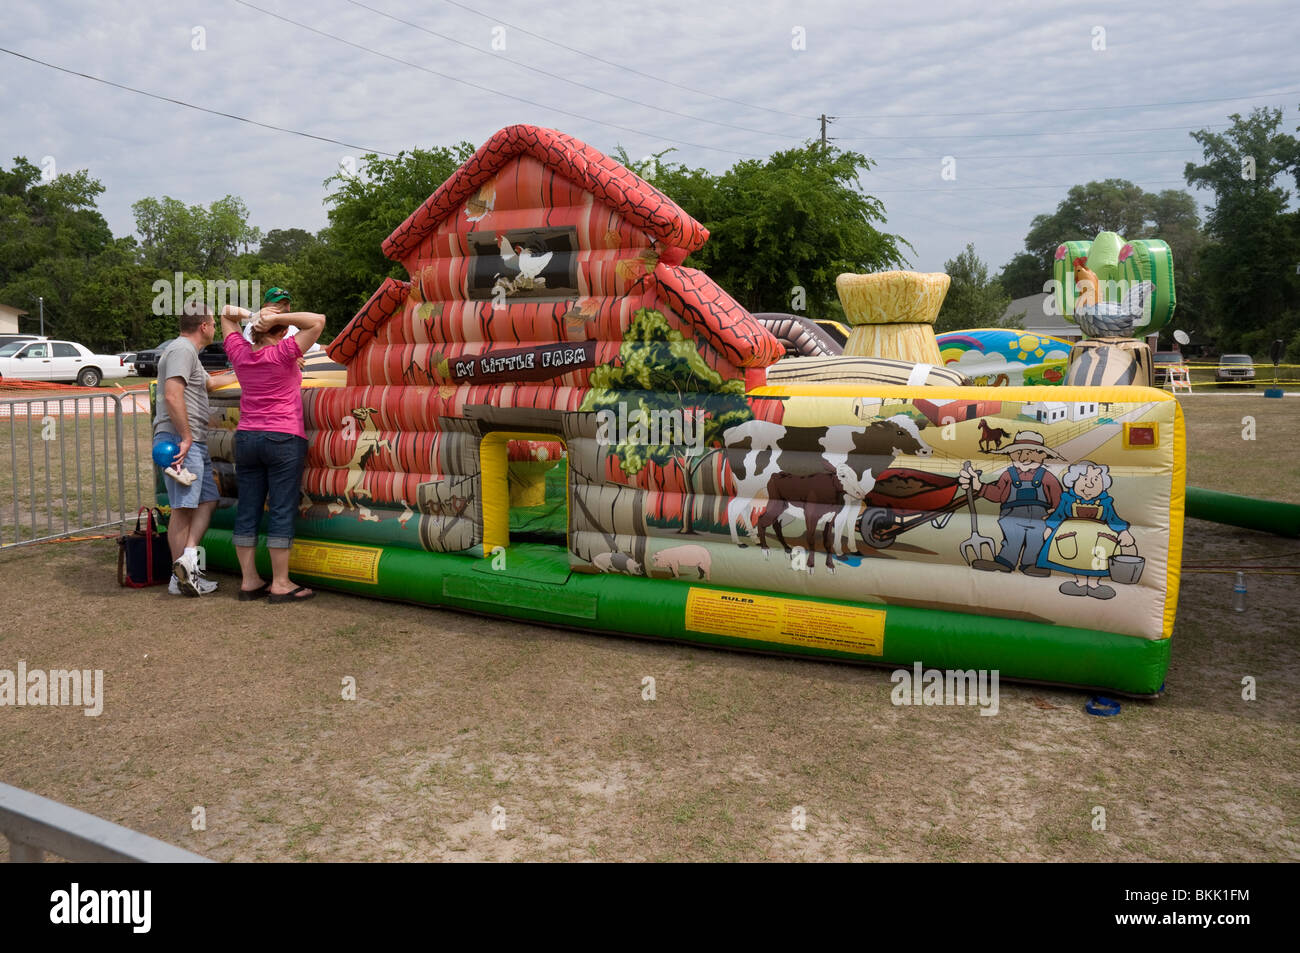 Pioneer Days High Springs Florida ferme gonflable dans une aire de jeux pour enfants Banque D'Images